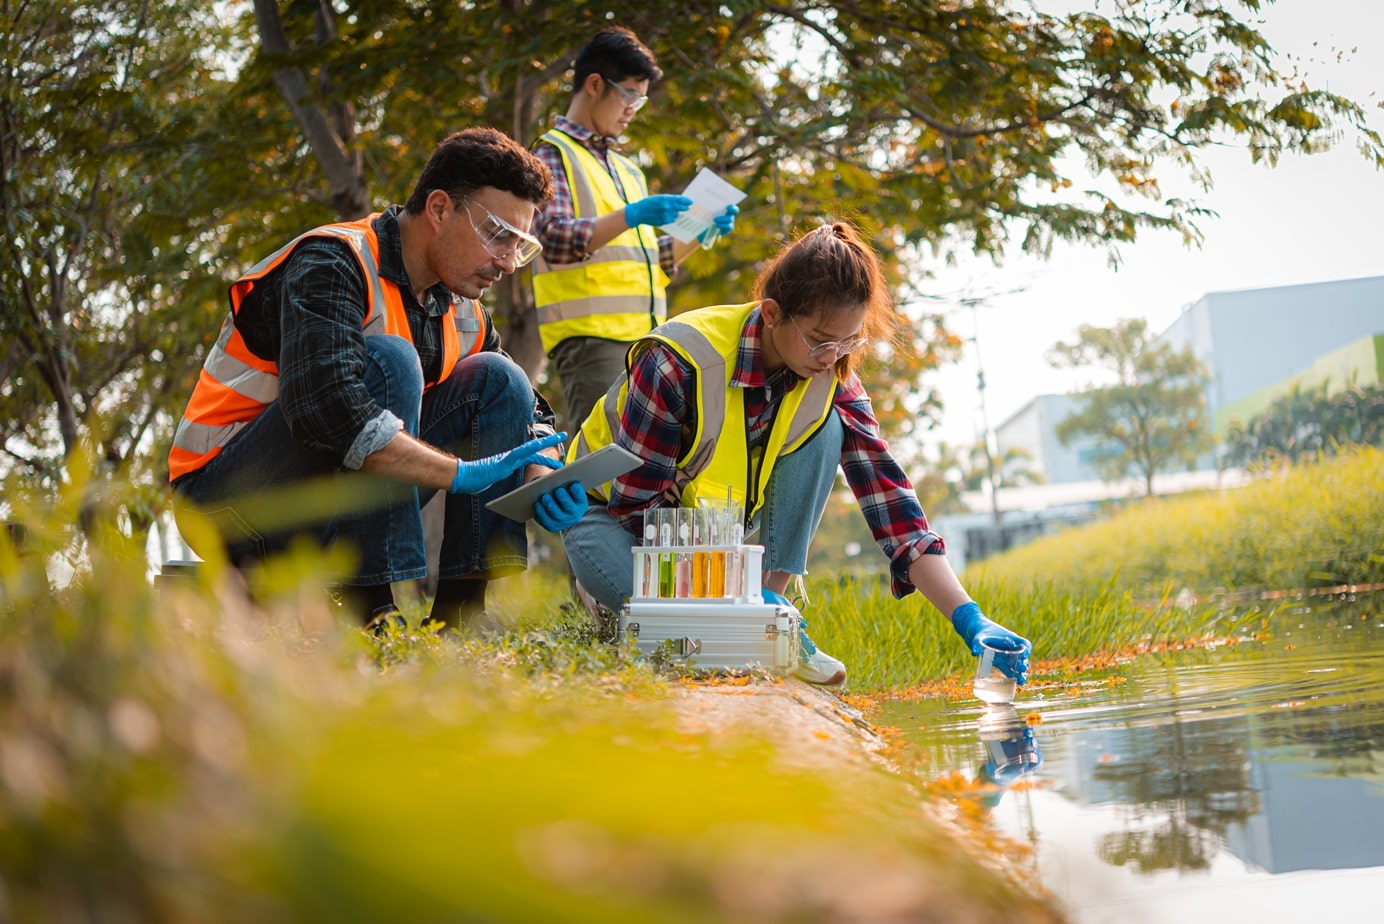 L’équipe scientifique recueille des échantillons d’eau pour des analyses et des études sur la qualité de l’eau, l’environnement et la préservation de la planète.